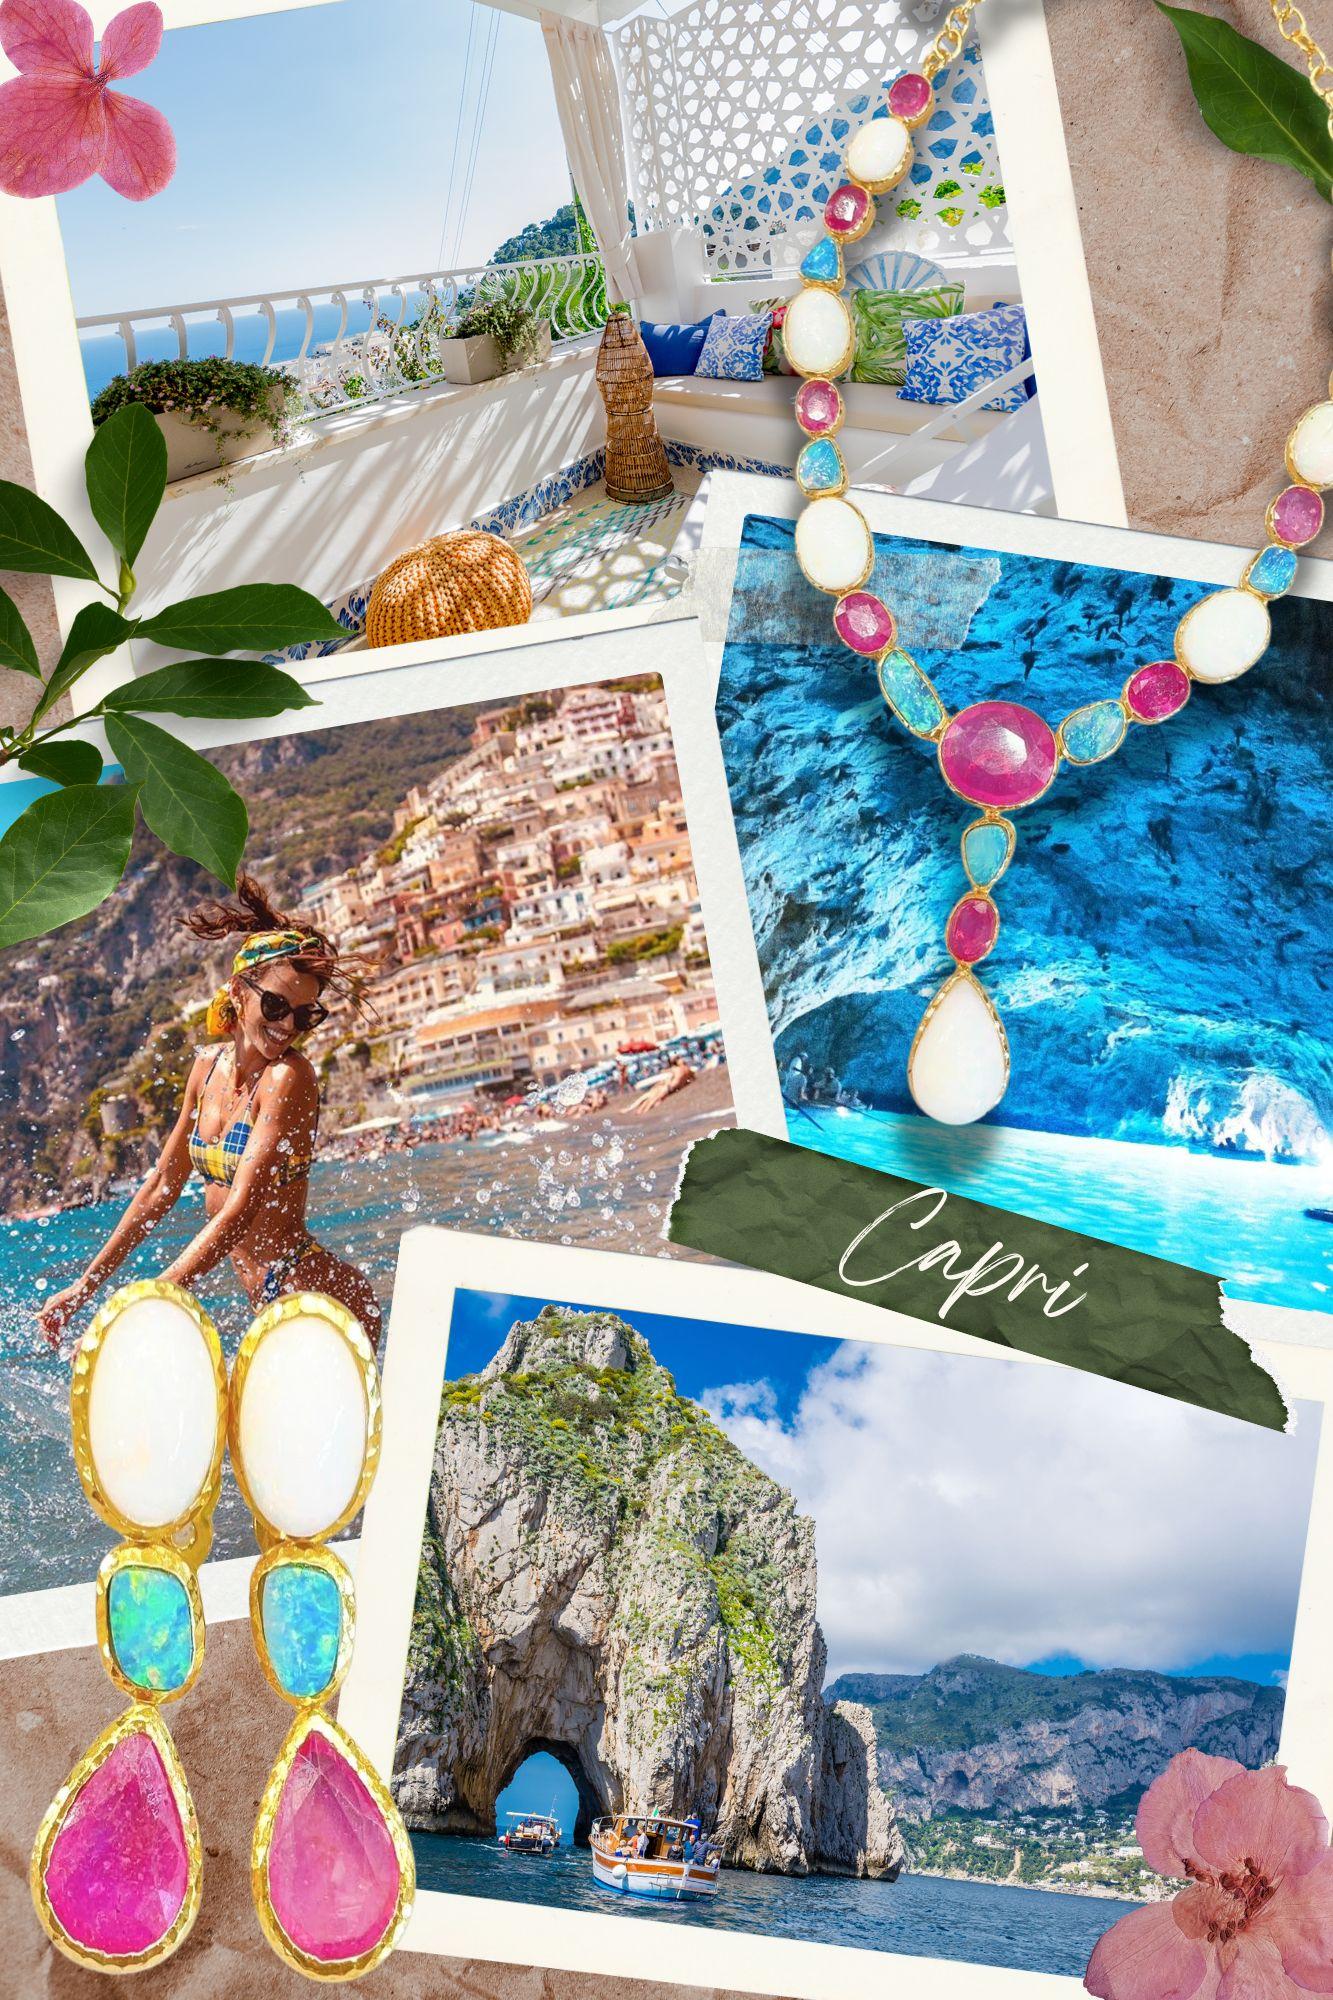 Bochic “Capri” Ruby, Sapphire & South Sea Pear Earrings In 18K Gold & Silver  For Sale 1